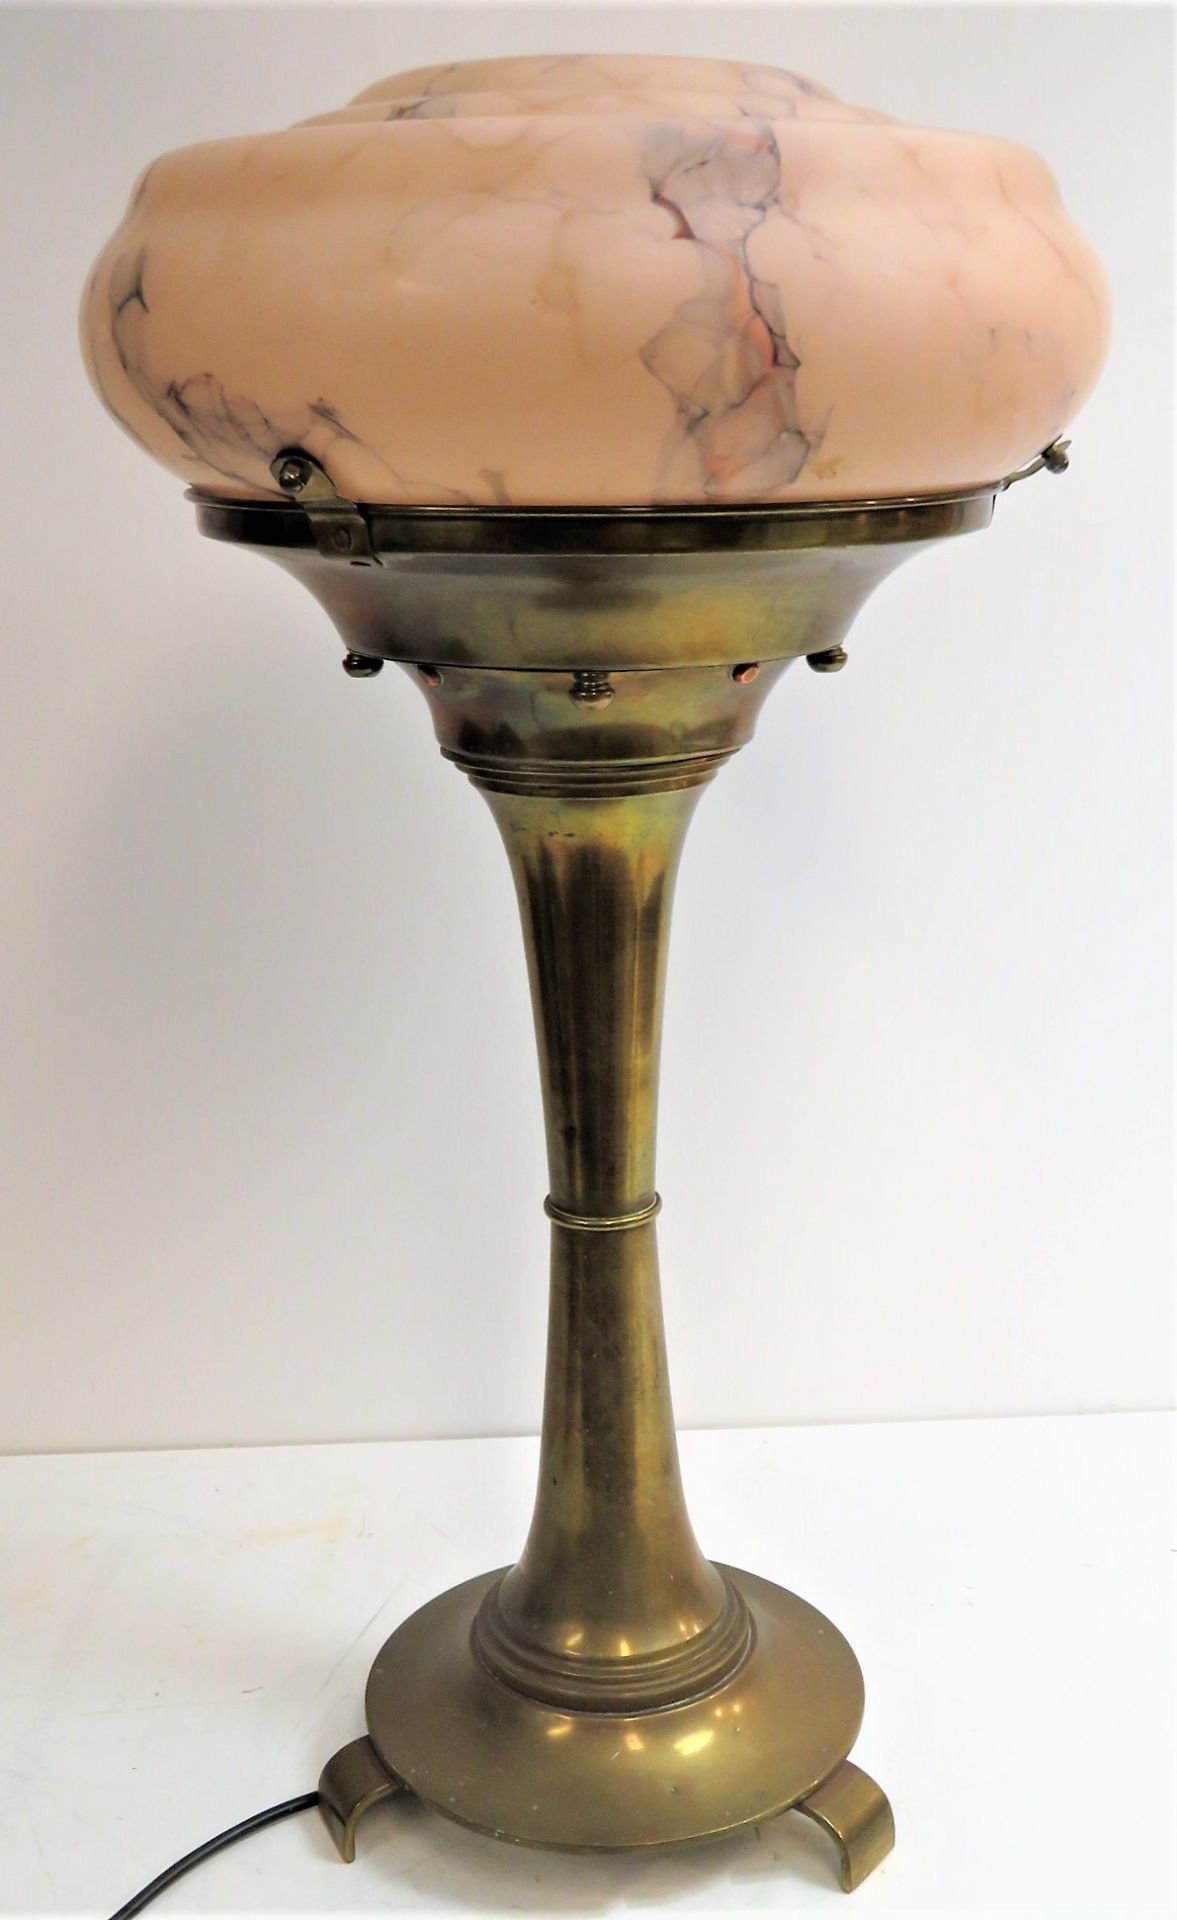 Tischleuchte, Art déco, um 1900/10, Standfuß Messing, rosafarben-marmorierter Glasschirm, Stecker d